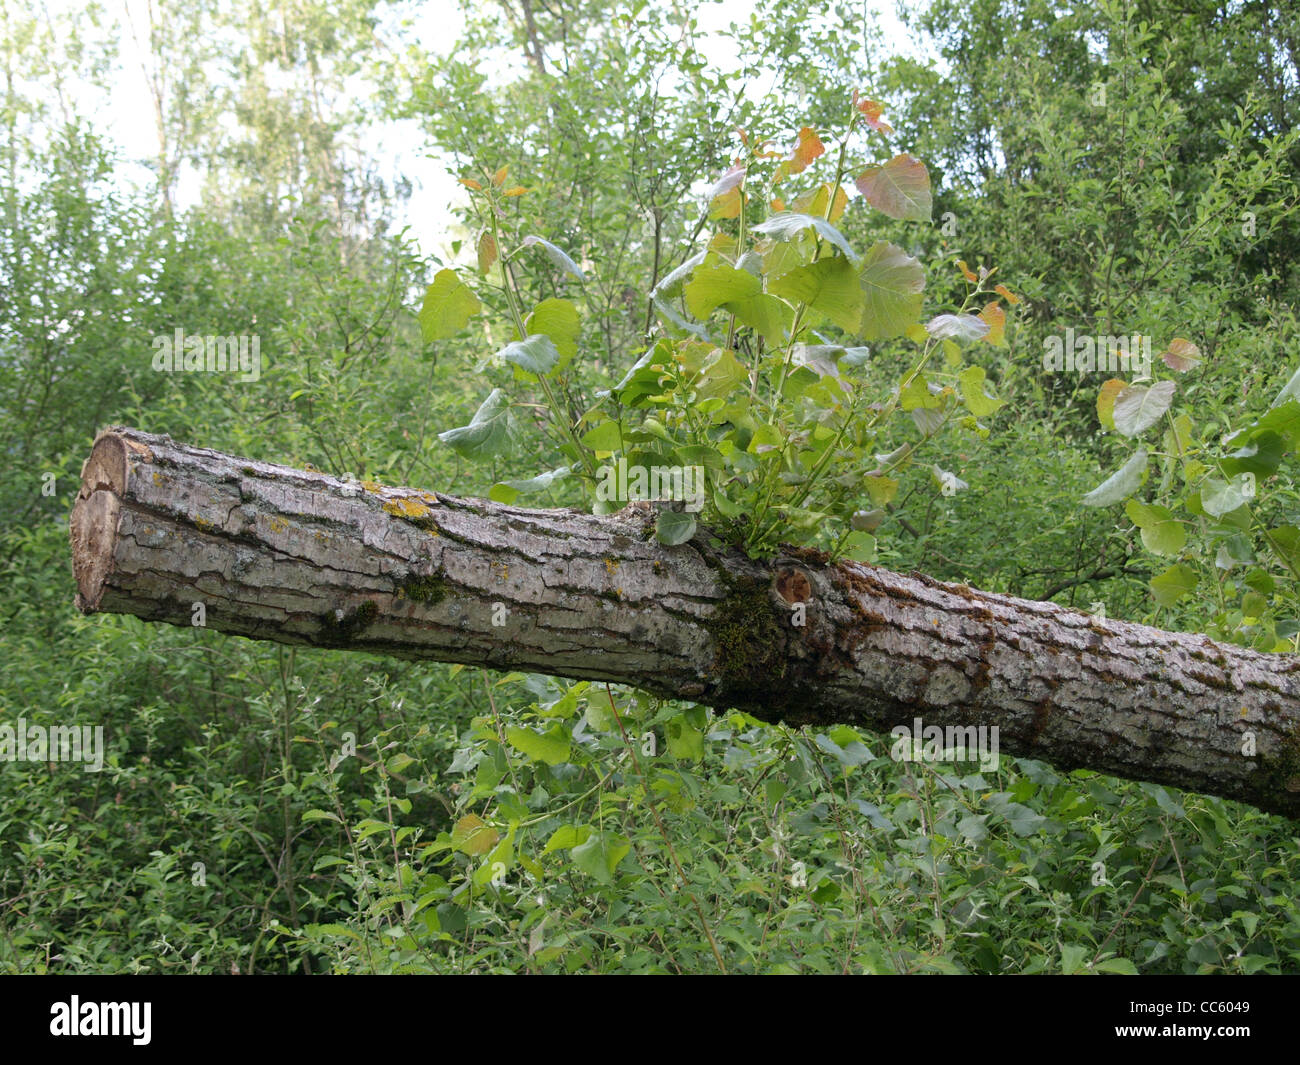 sawed poplar tree with fresh shoot / abgesägte Pappel mit frischen Austrieben Stock Photo